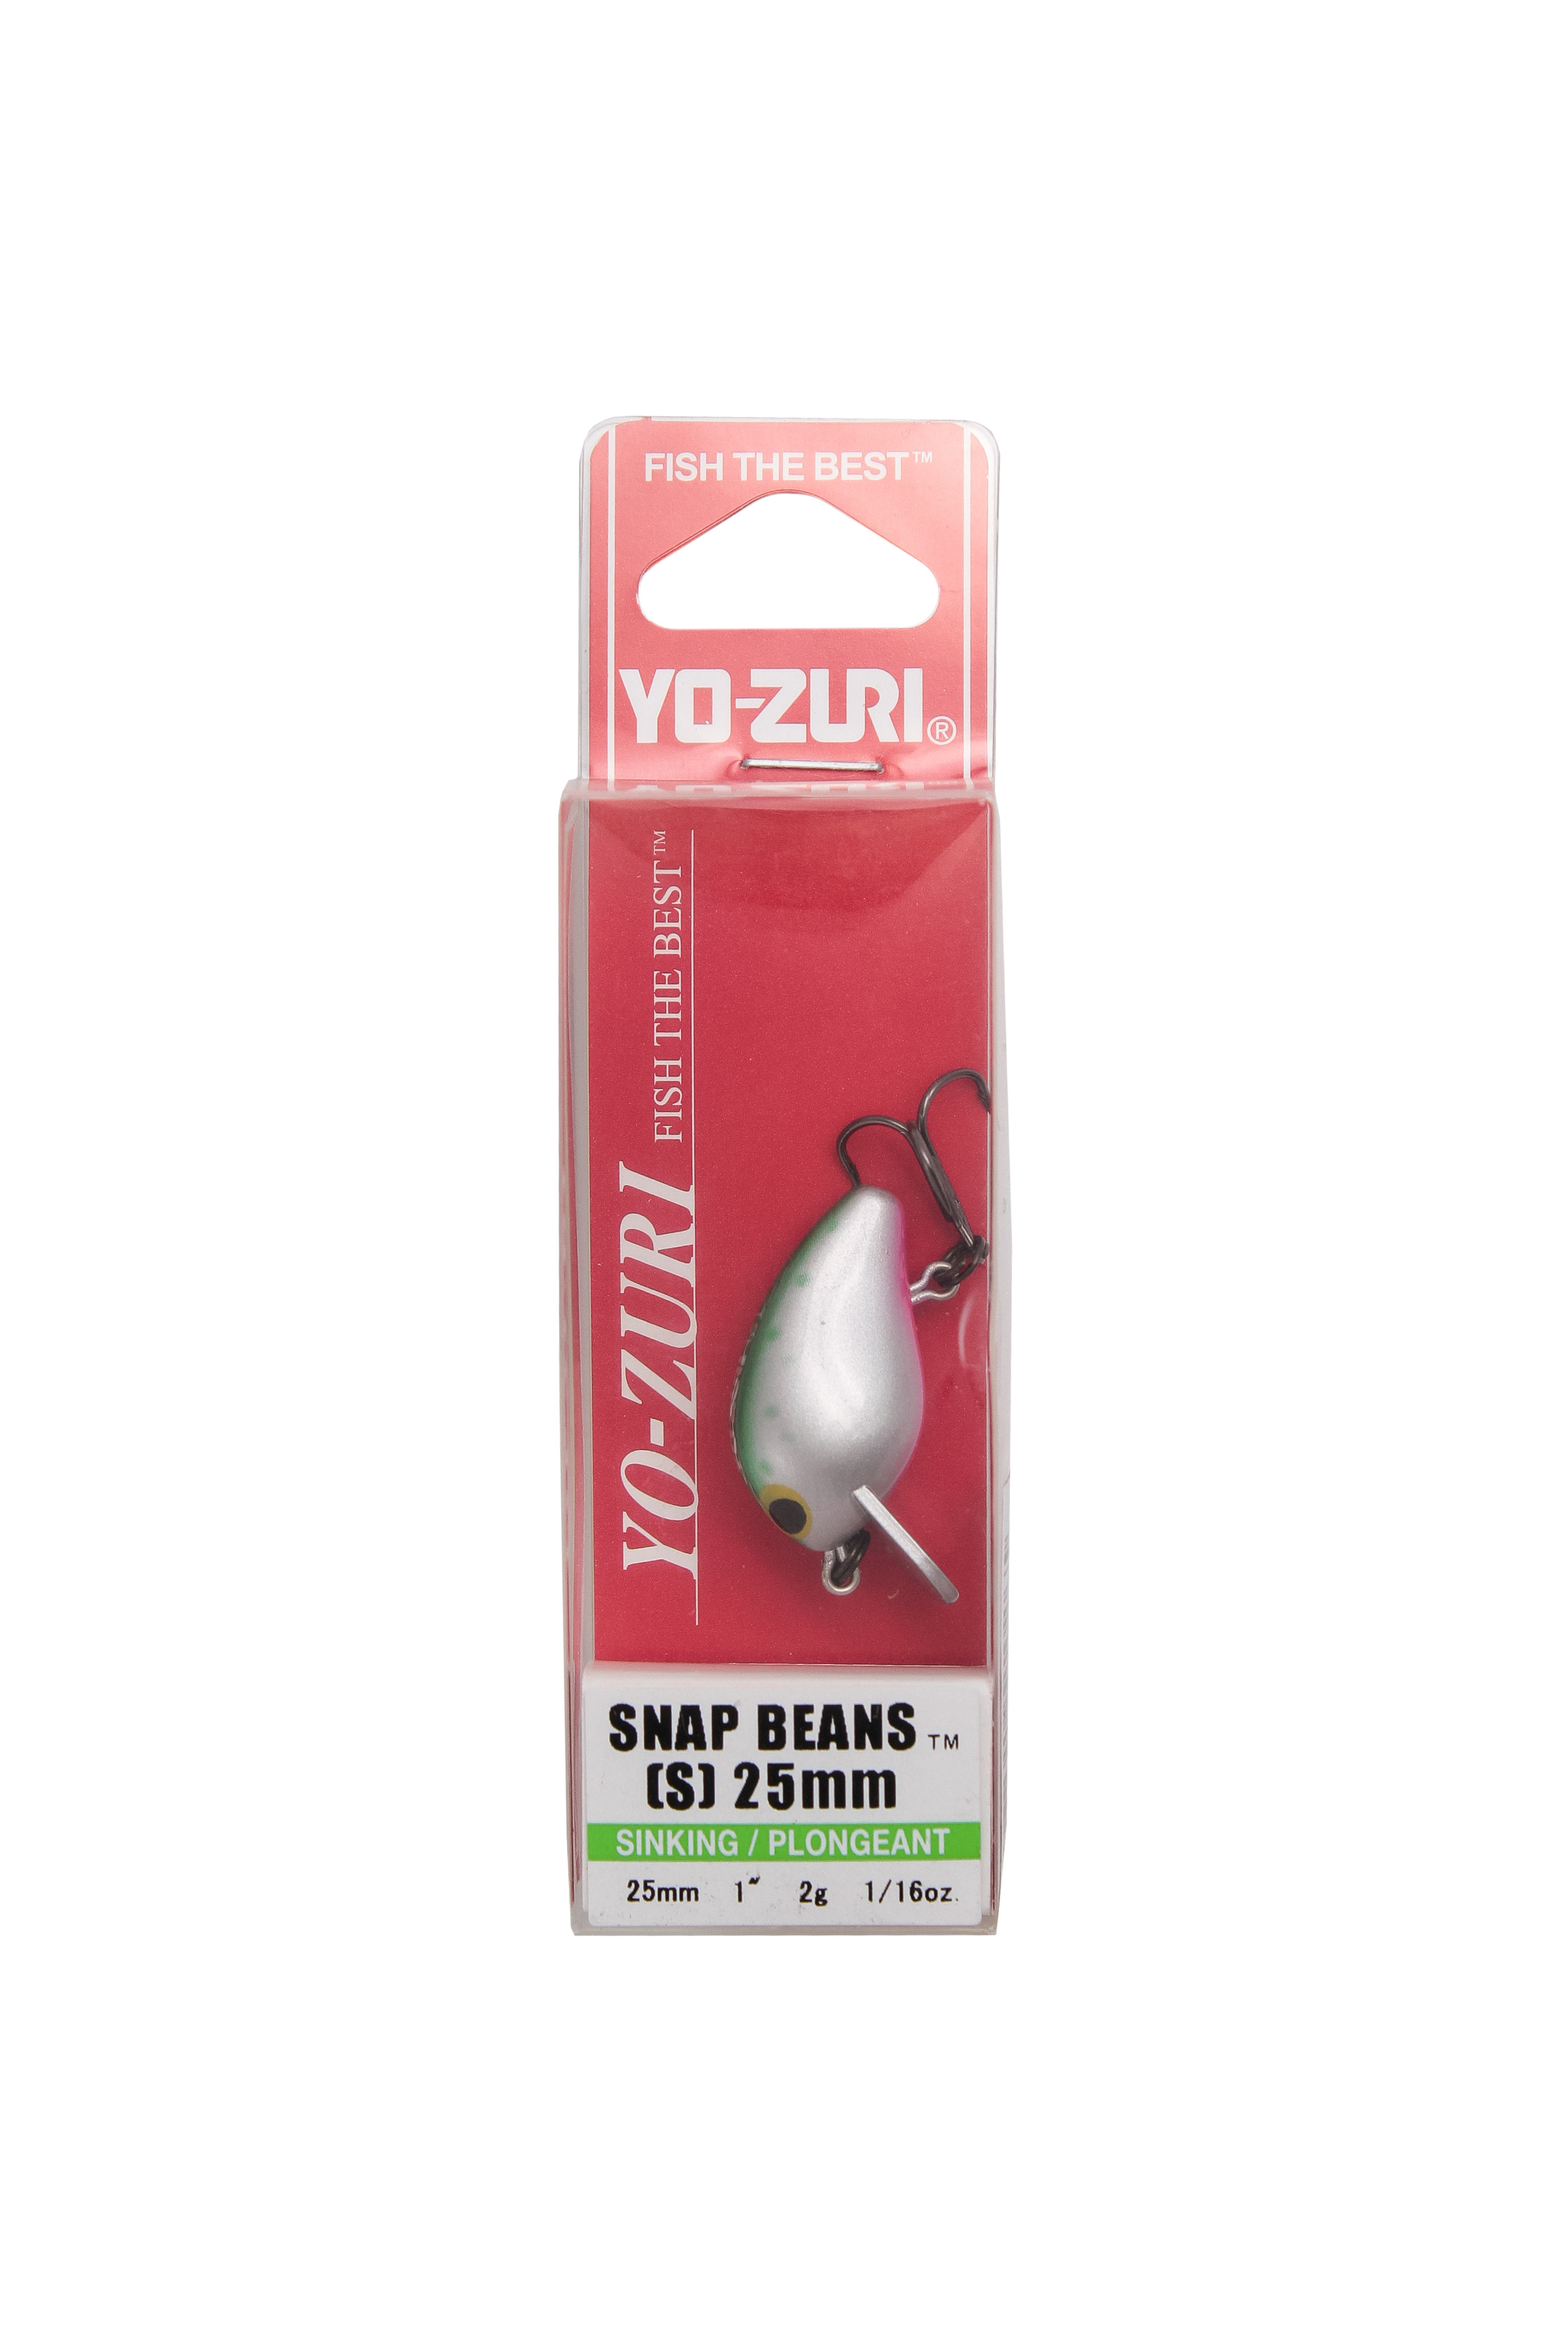 Воблер Yo-Zuri snap beans S 25мм R1217 RT купить в интернет-магазине